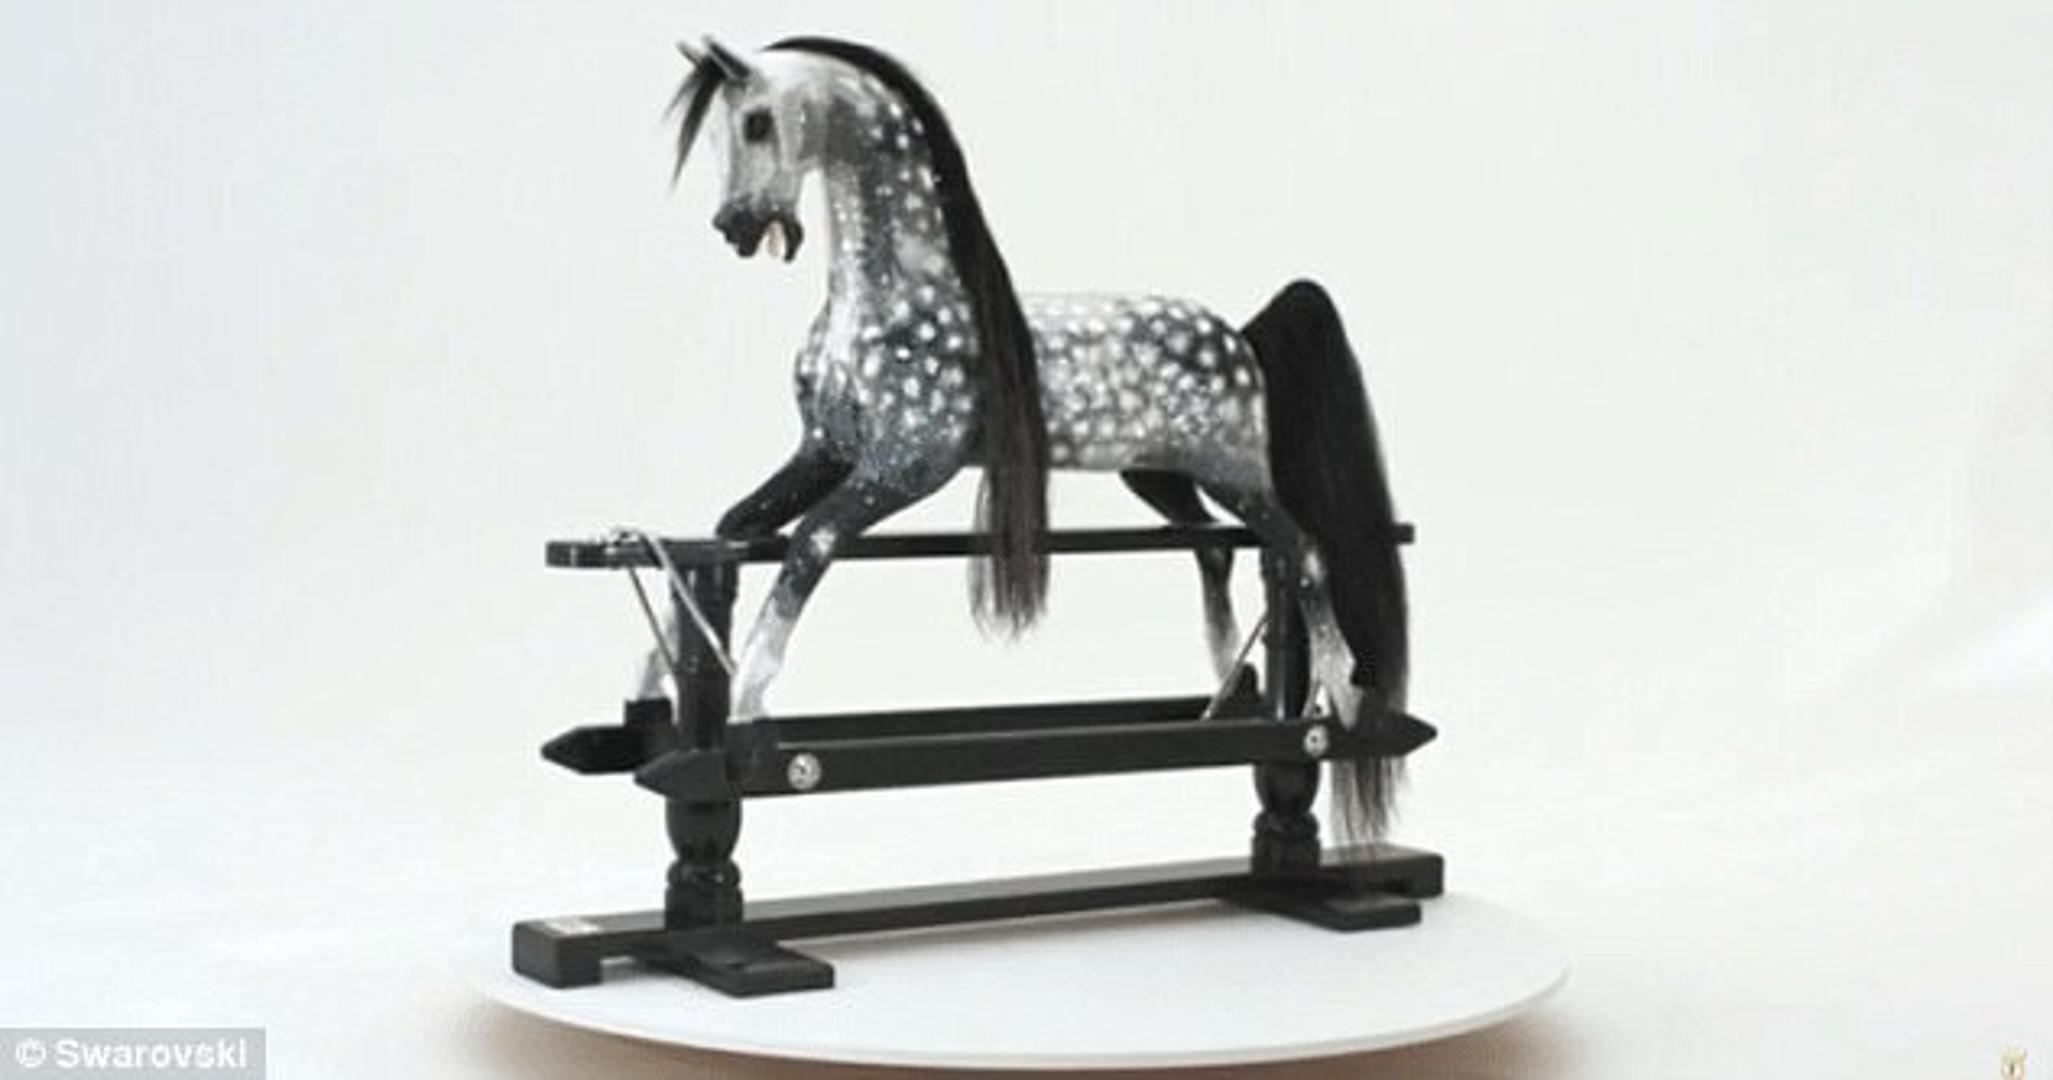 Još jedna skupocijena igračka konjić je za ljuljanje koji potpisuje Swarovski. Cijena mu je 100 tisuća dolara